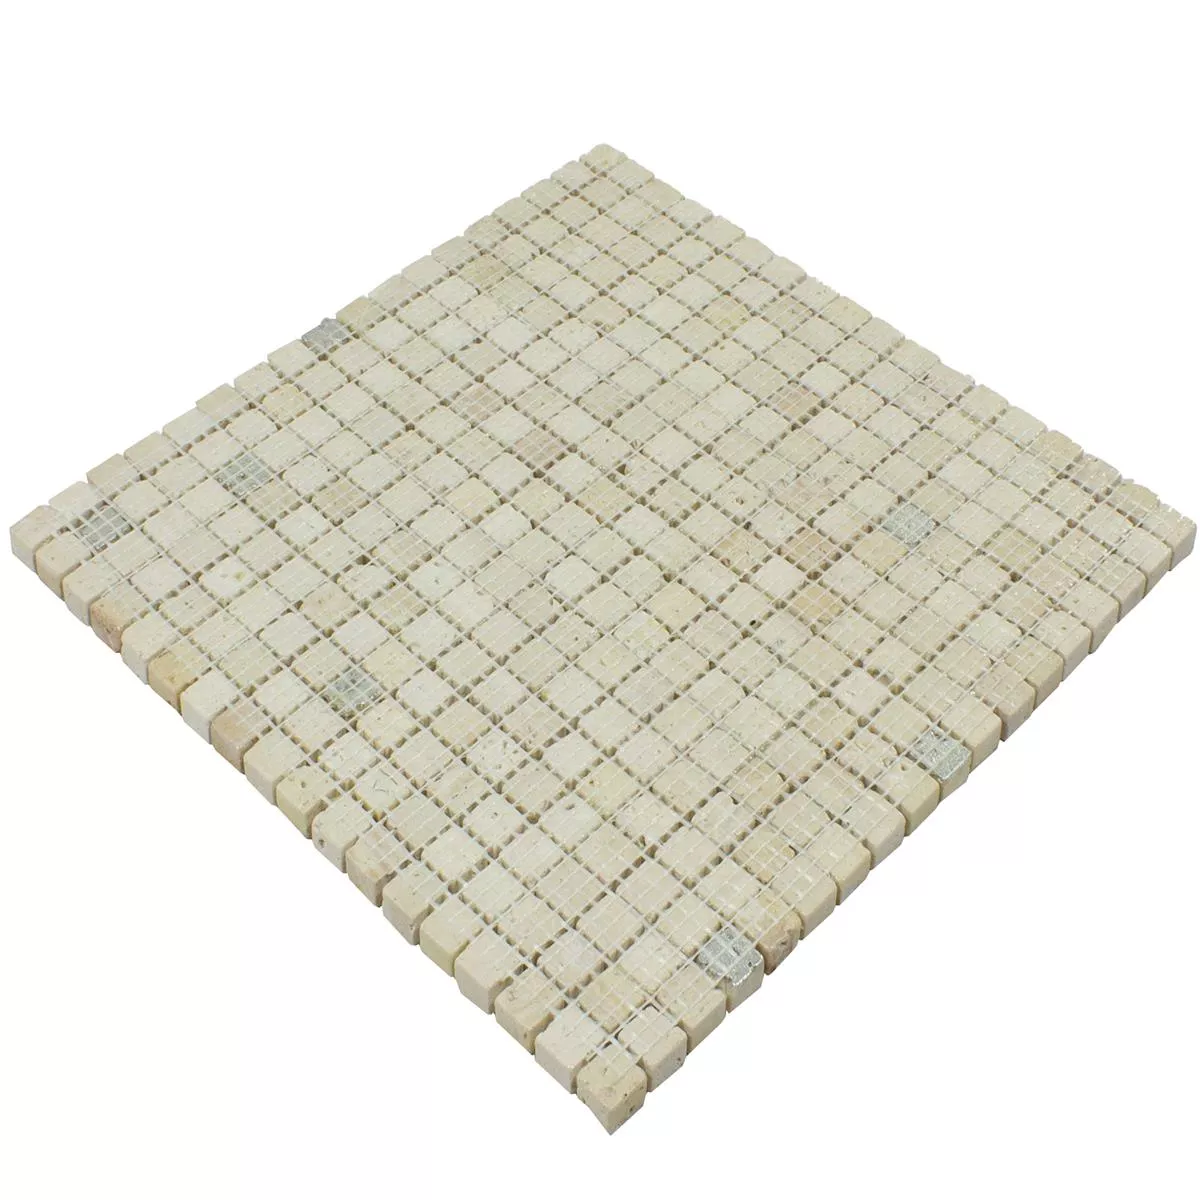 Marmo Mosaico In Pietra Naturale Piastrelle Antika Mix Argento Crema